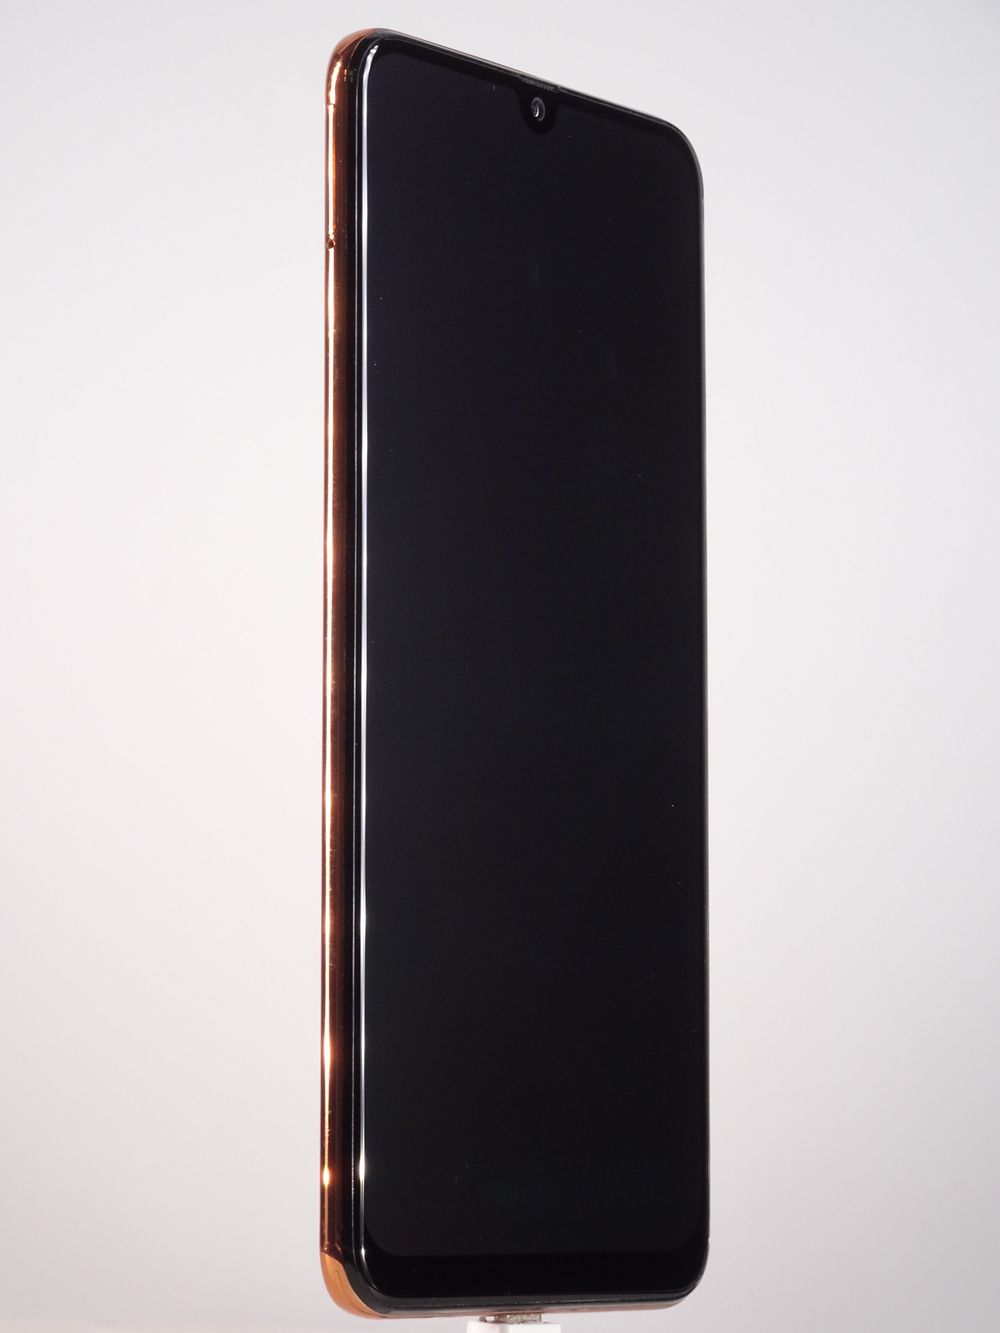 Мобилен телефон Samsung, Galaxy A50 (2019), 128 GB, Coral,  Като нов